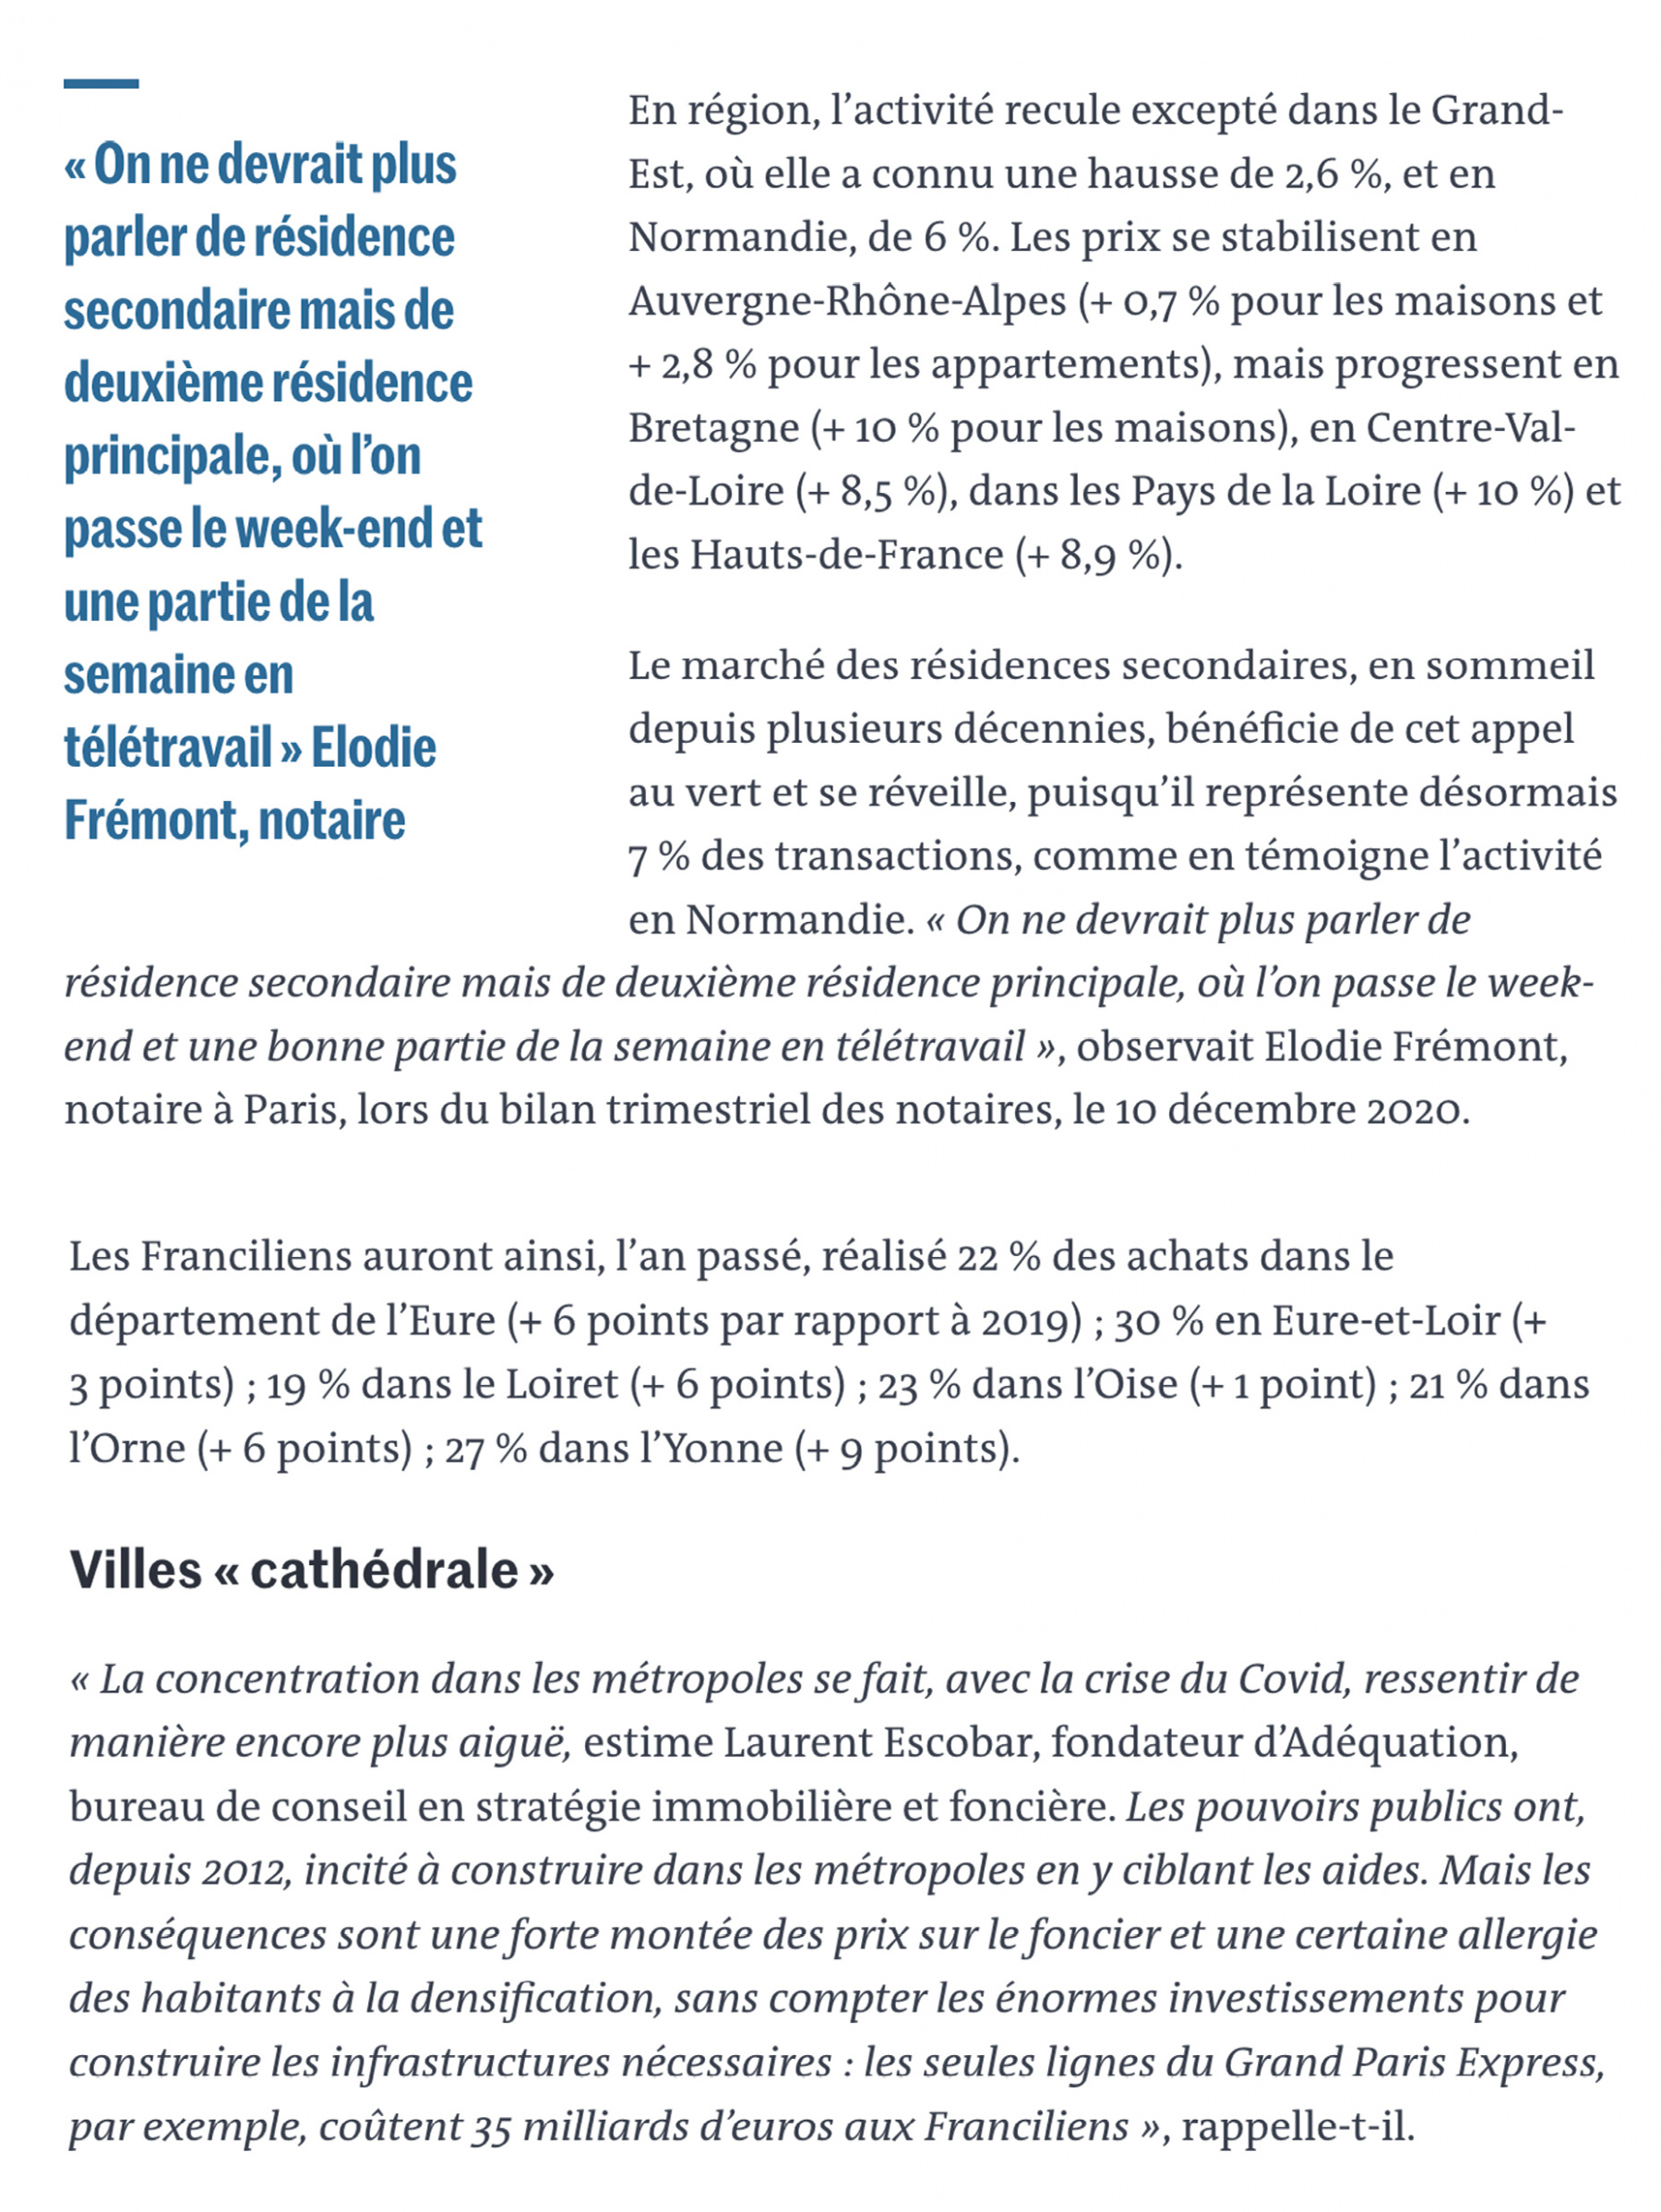 Illustration - Article Le Monde 04/01 - 3/4